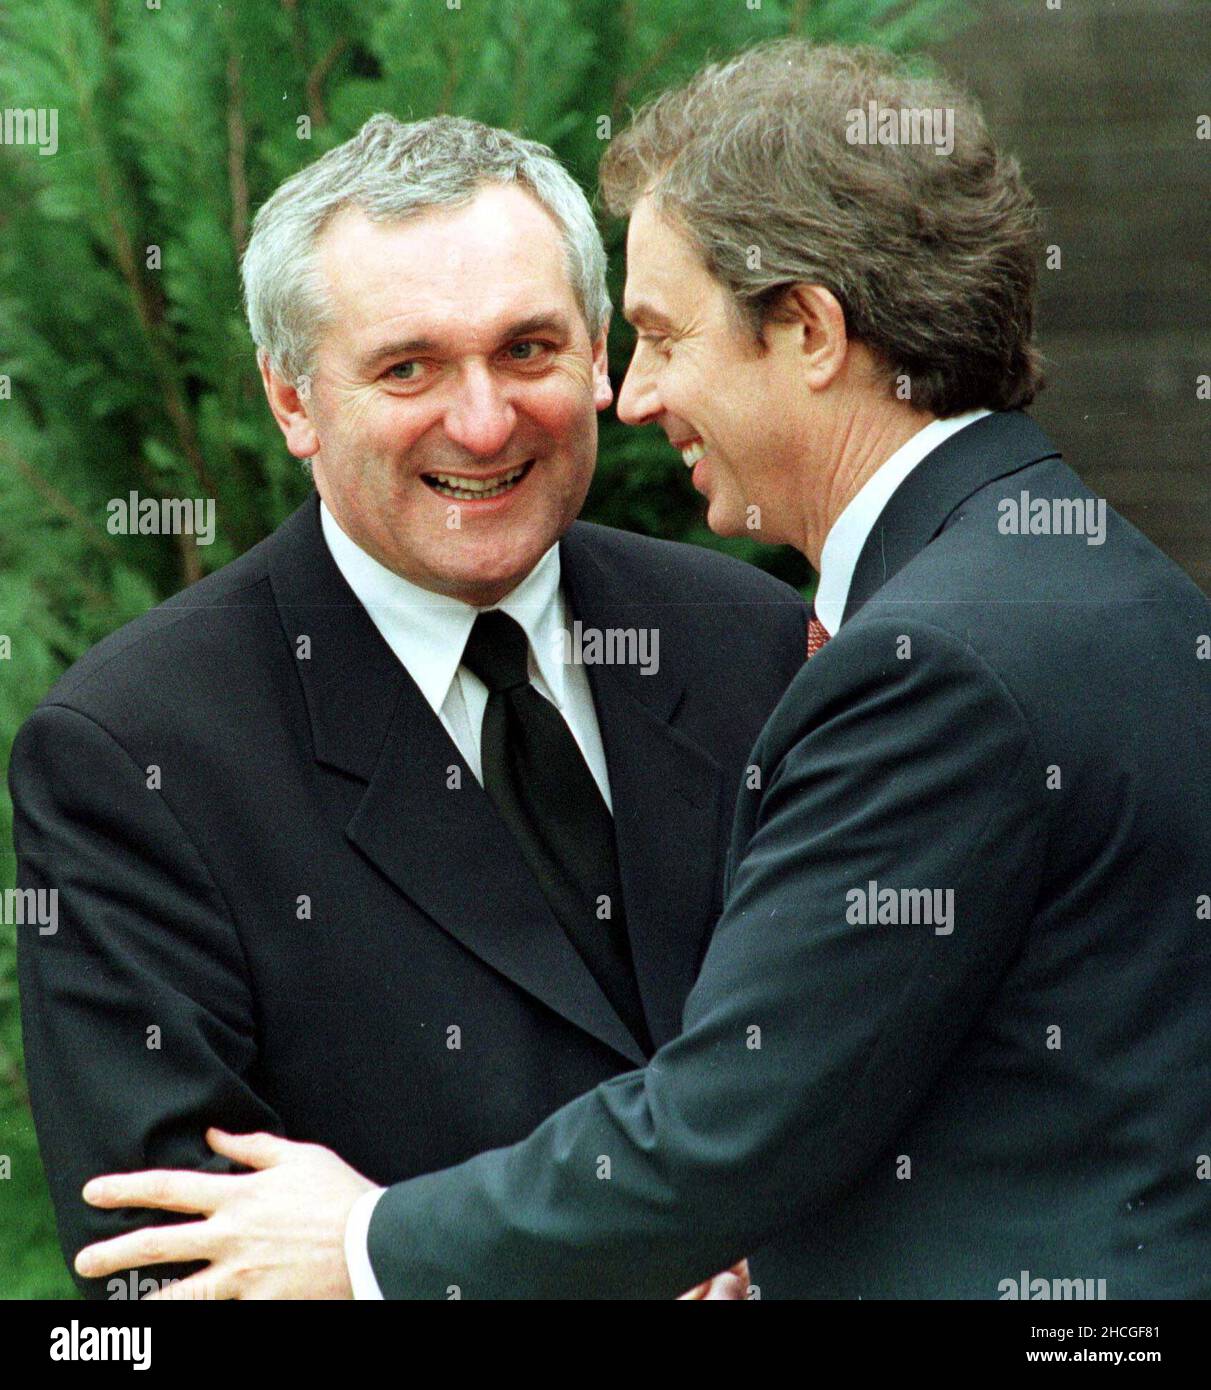 Datei-Foto vom 10/04/98 der damaligen Taoiseach Berie Ahern (links) und des damaligen Premierministers Tony Blair, die nach der Ankündigung des historischen Friedensverschlusses nach einer Marathonsitzung von Gesprächen in Stormont begrüßt wurden. Ausgabedatum: Mittwoch, 29. Dezember 2021. Stockfoto